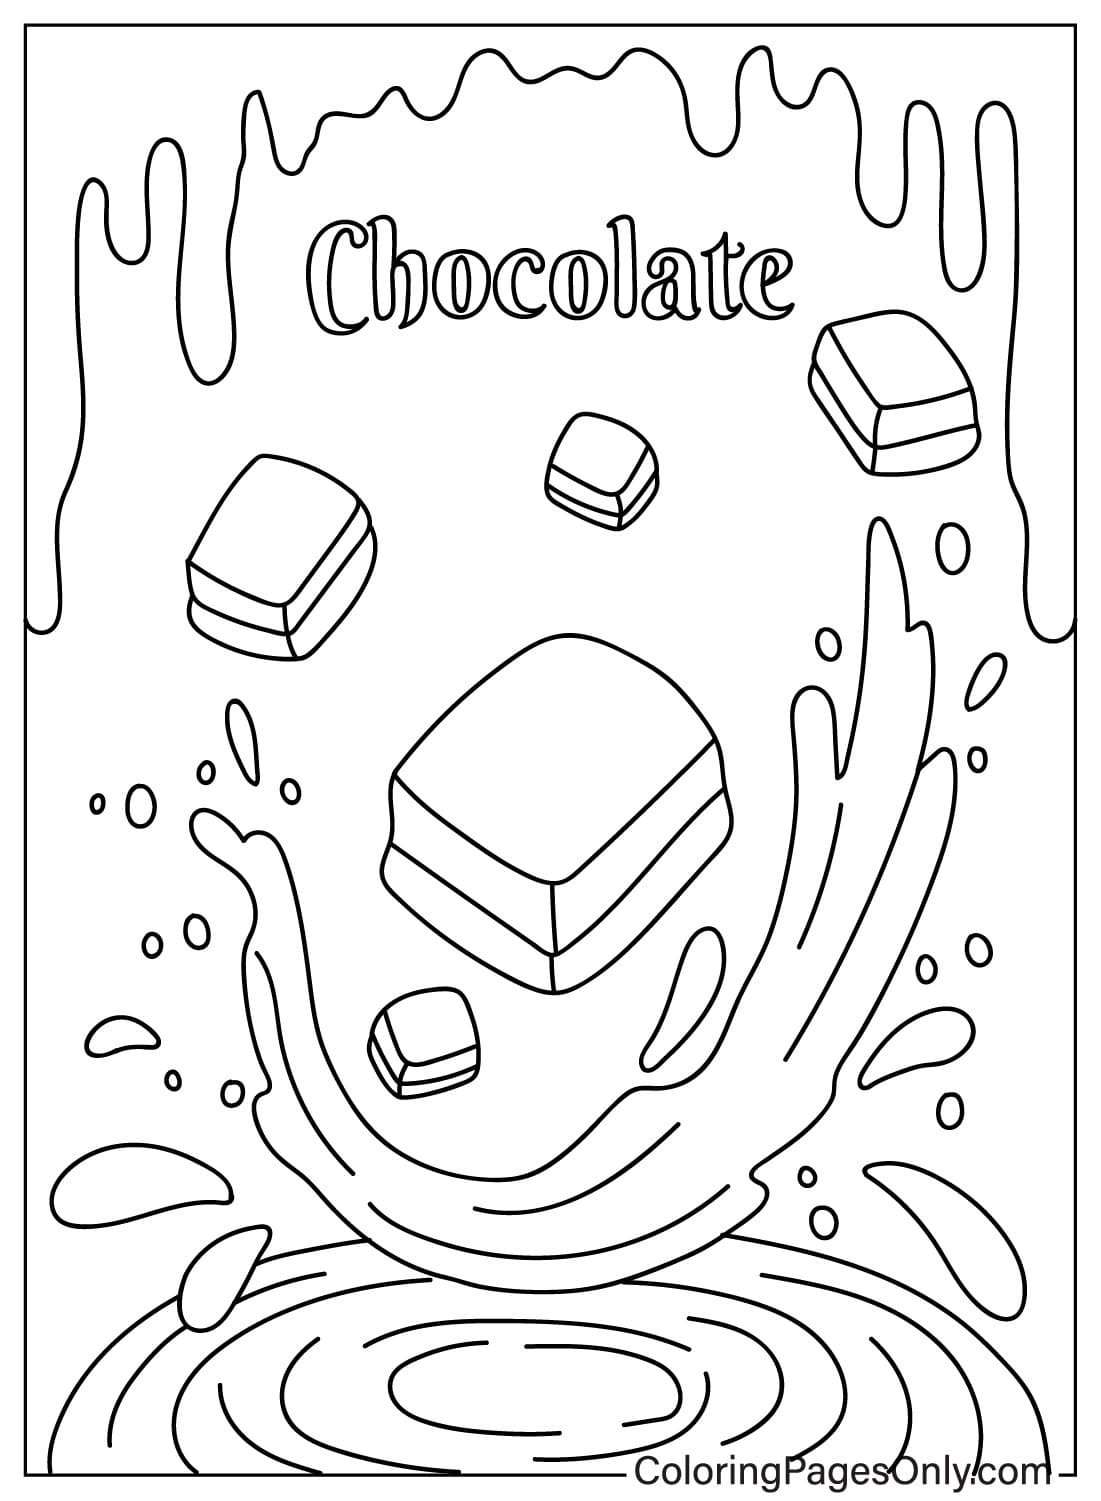 Página para colorear gratis de chocolate de Chocolate